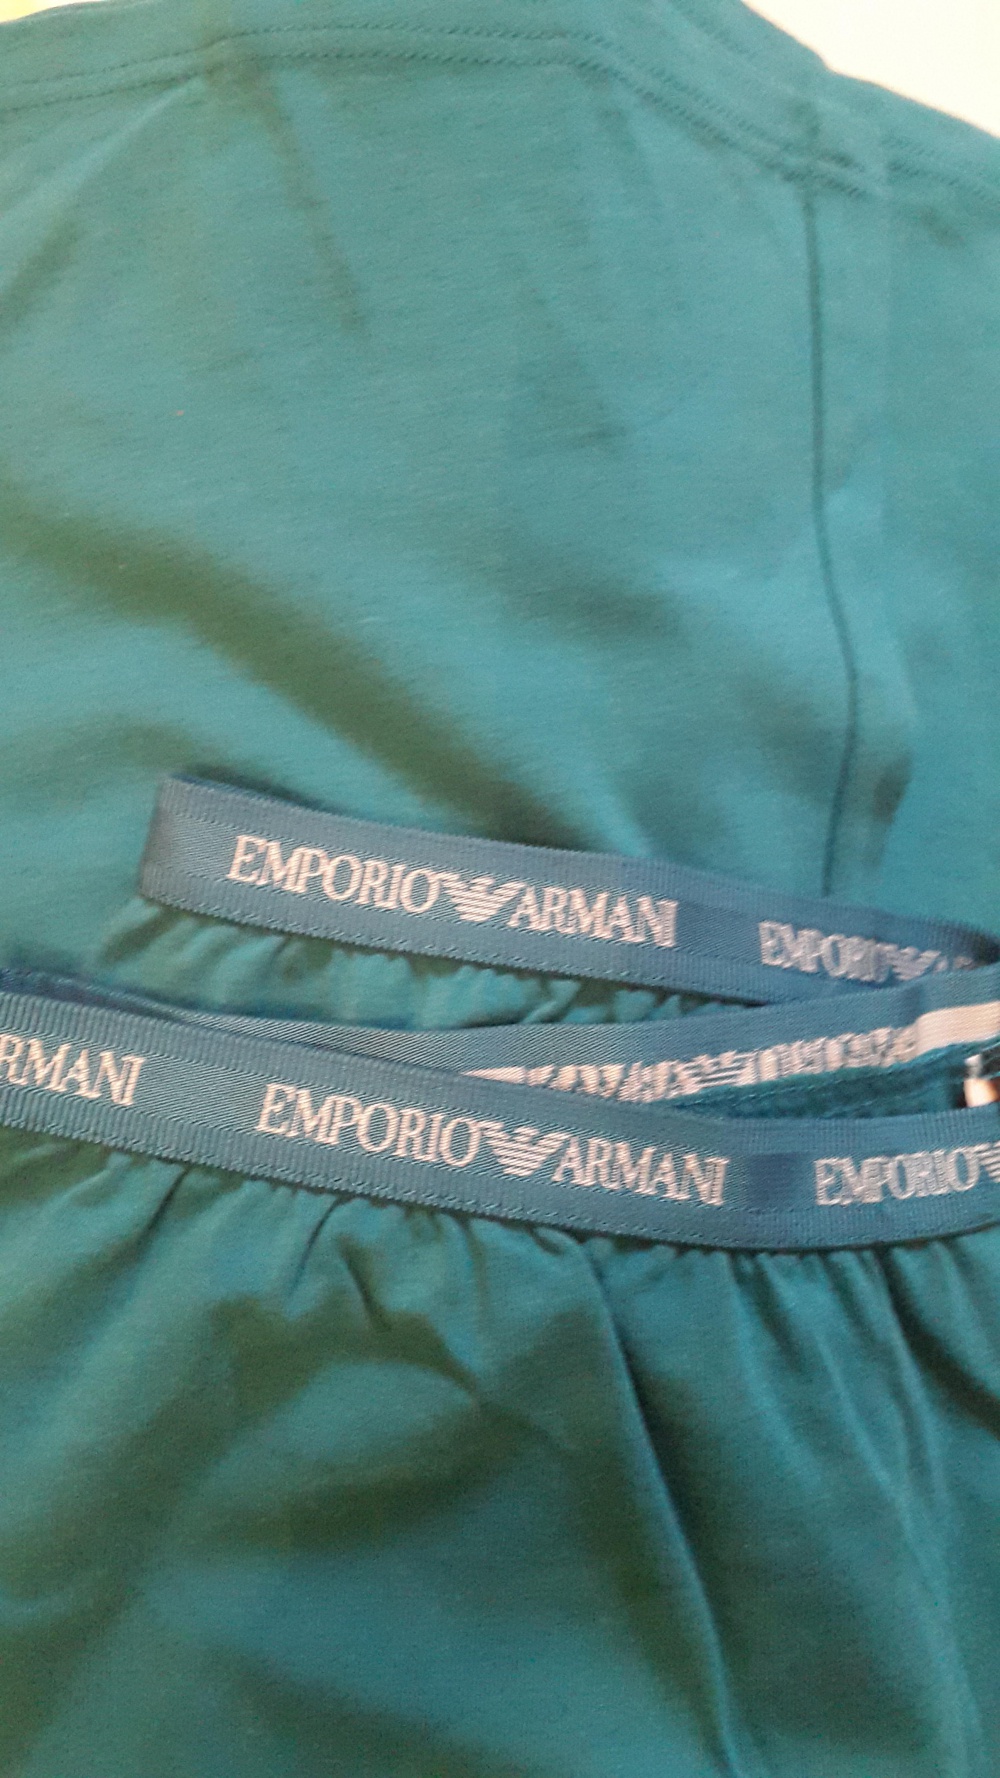 Пижама Emporio Armani размер M